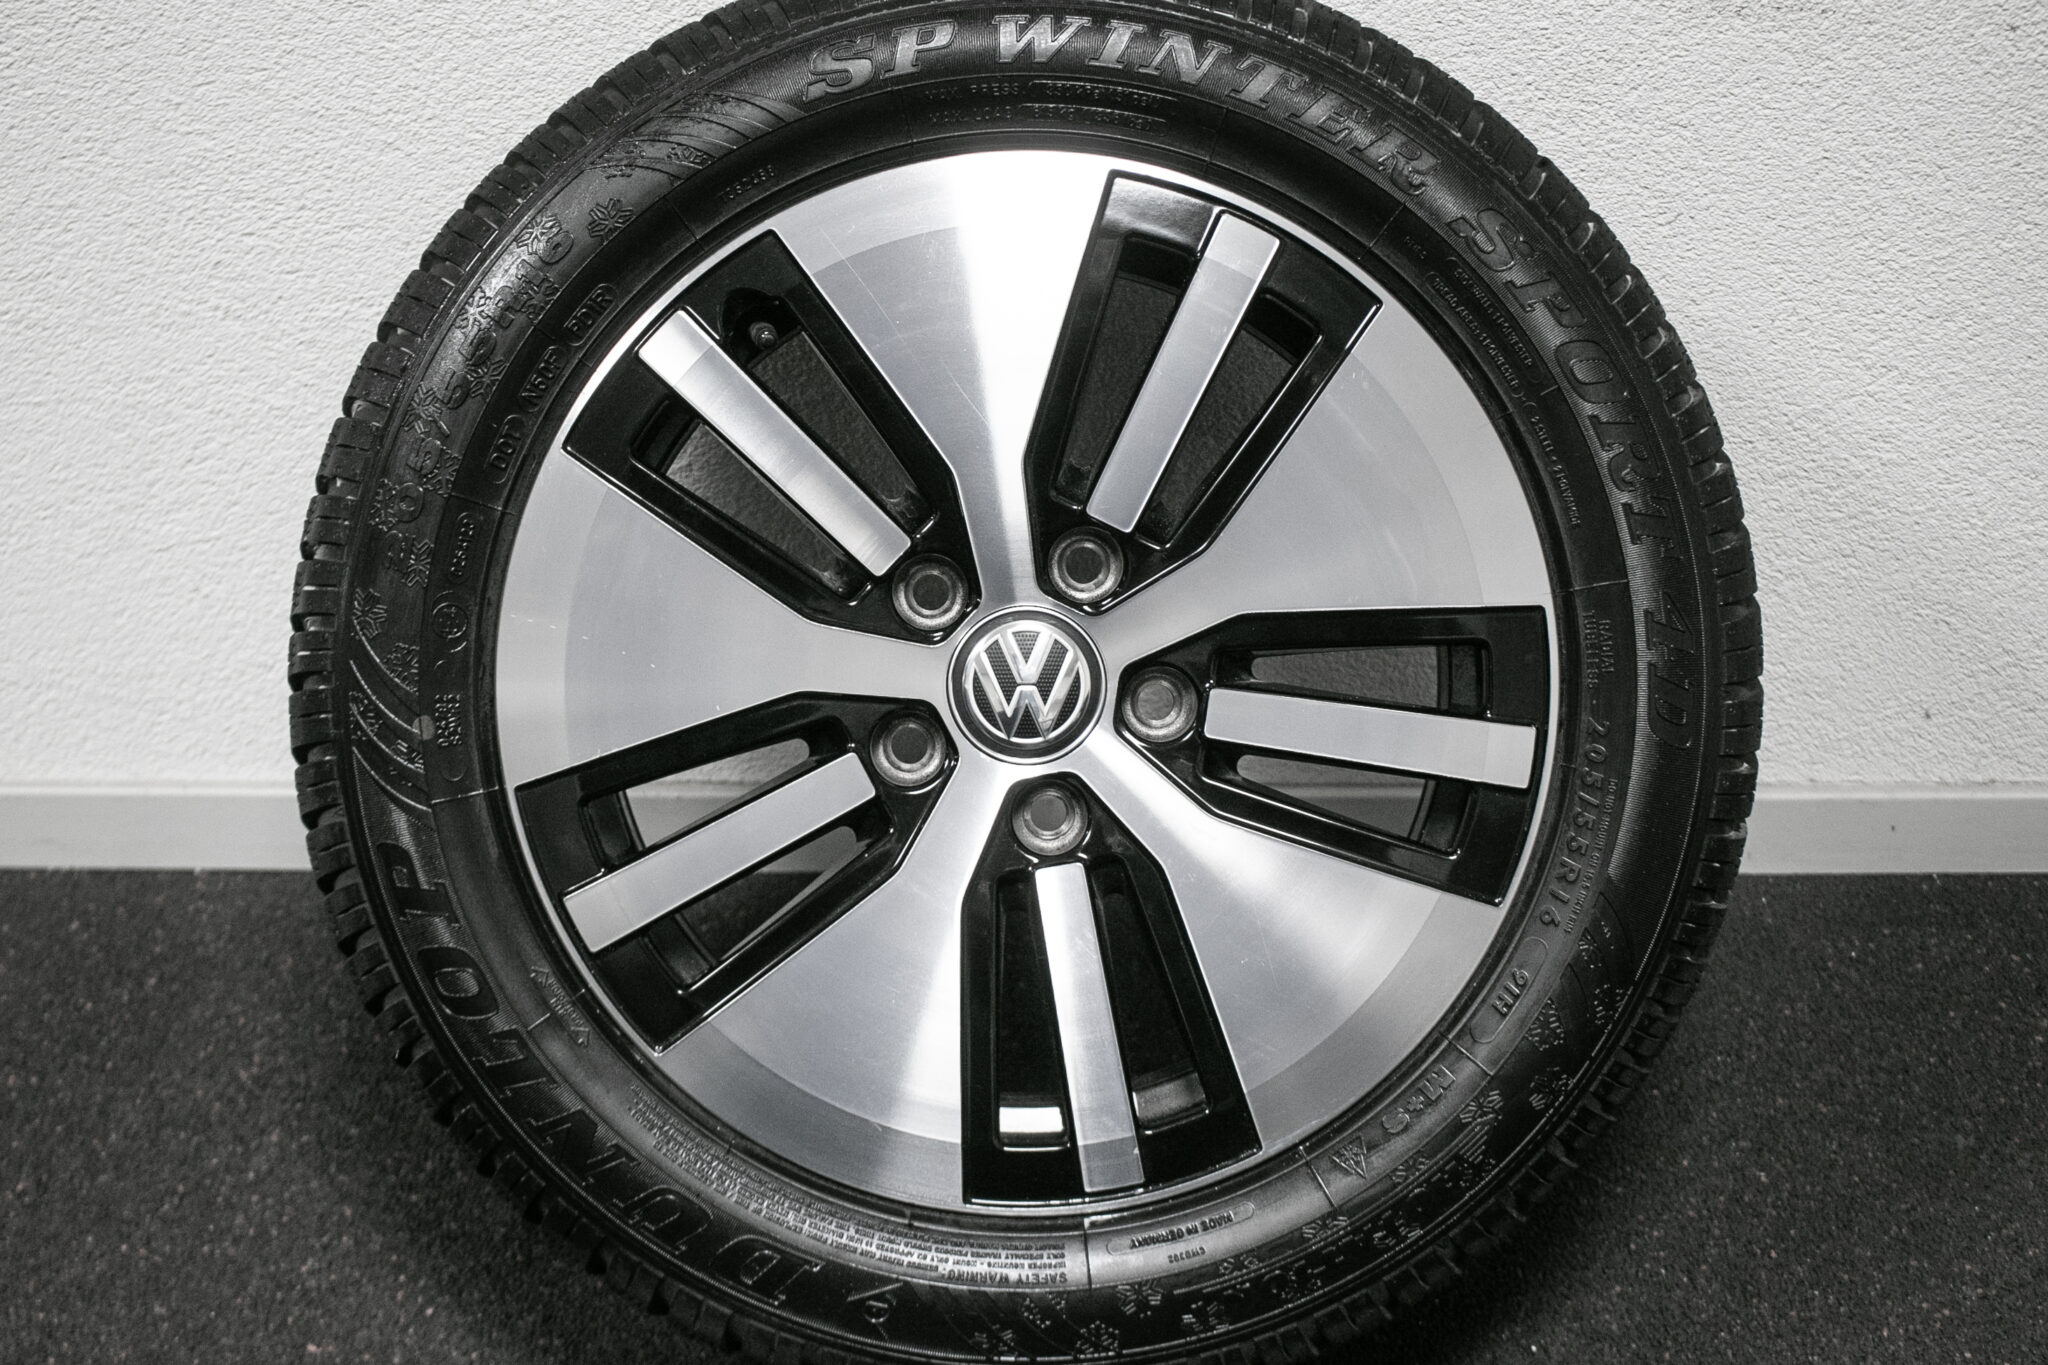 16" Winterwielen voor  een Volkswagen Golf (GTE) vanaf 2012
€499,-
gebruikt. Profieldiepte: 6.5mm - 7mm